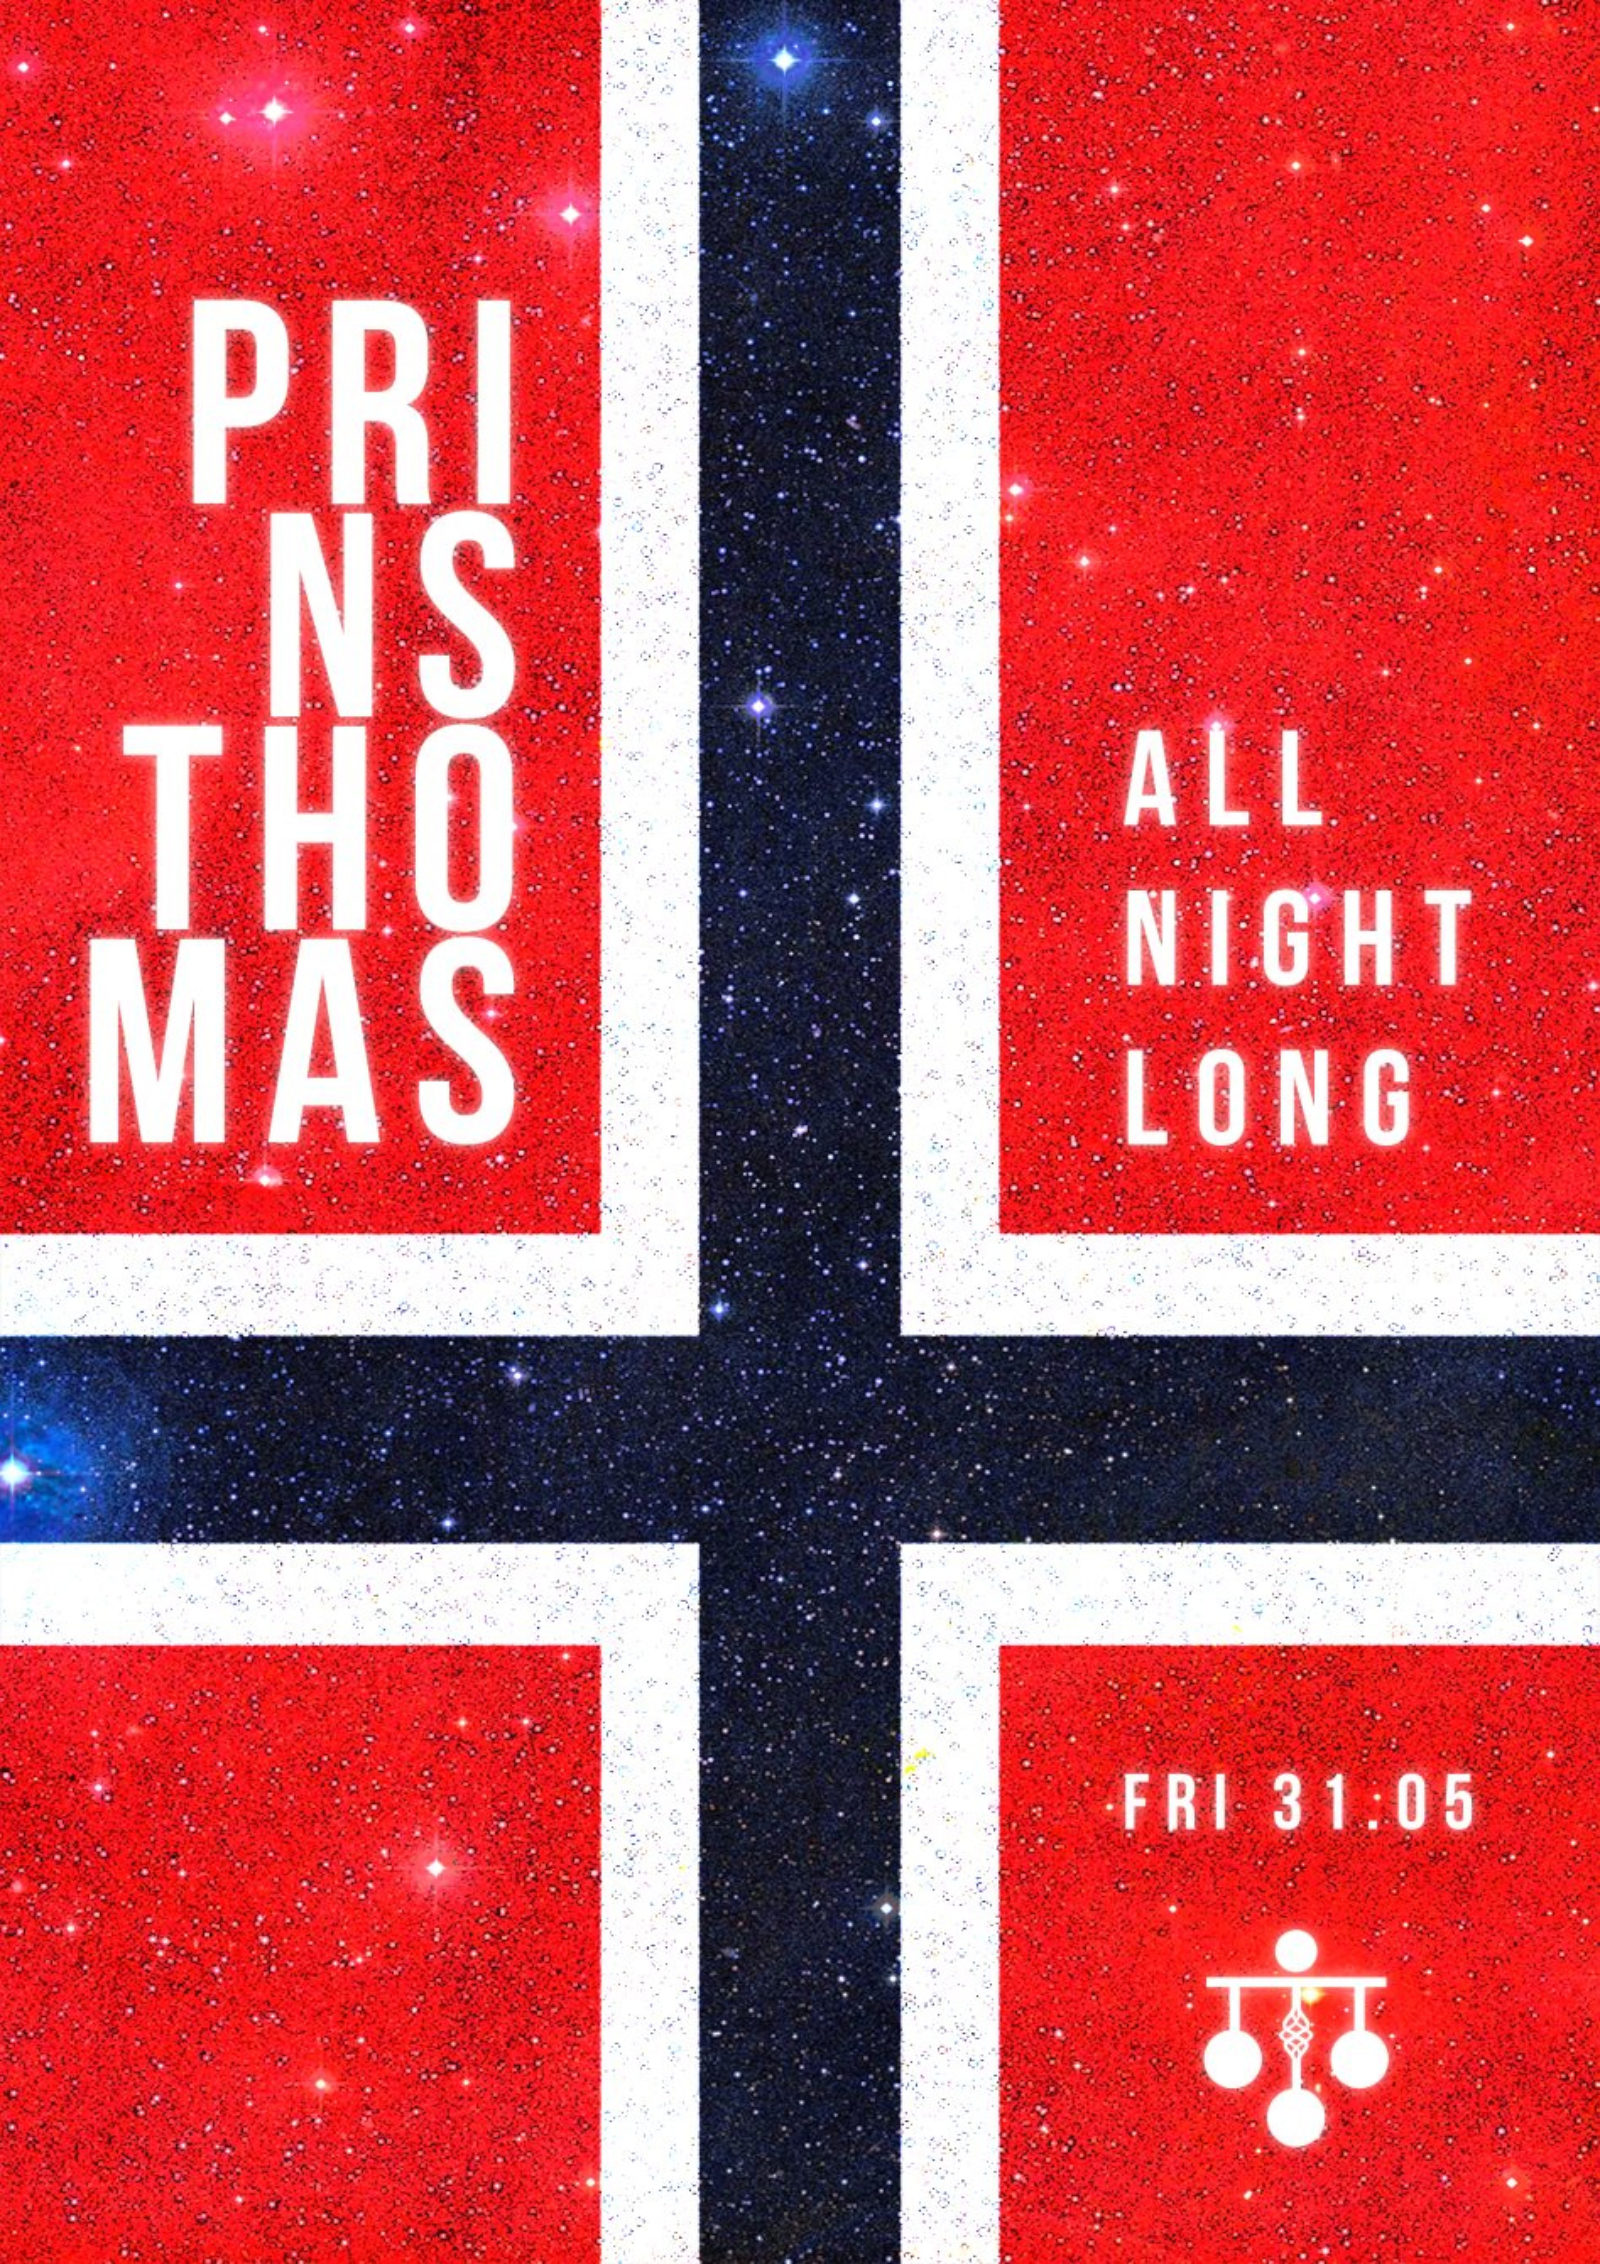 PRINS THOMAS - ALL NIGHT LONG - 4AM!